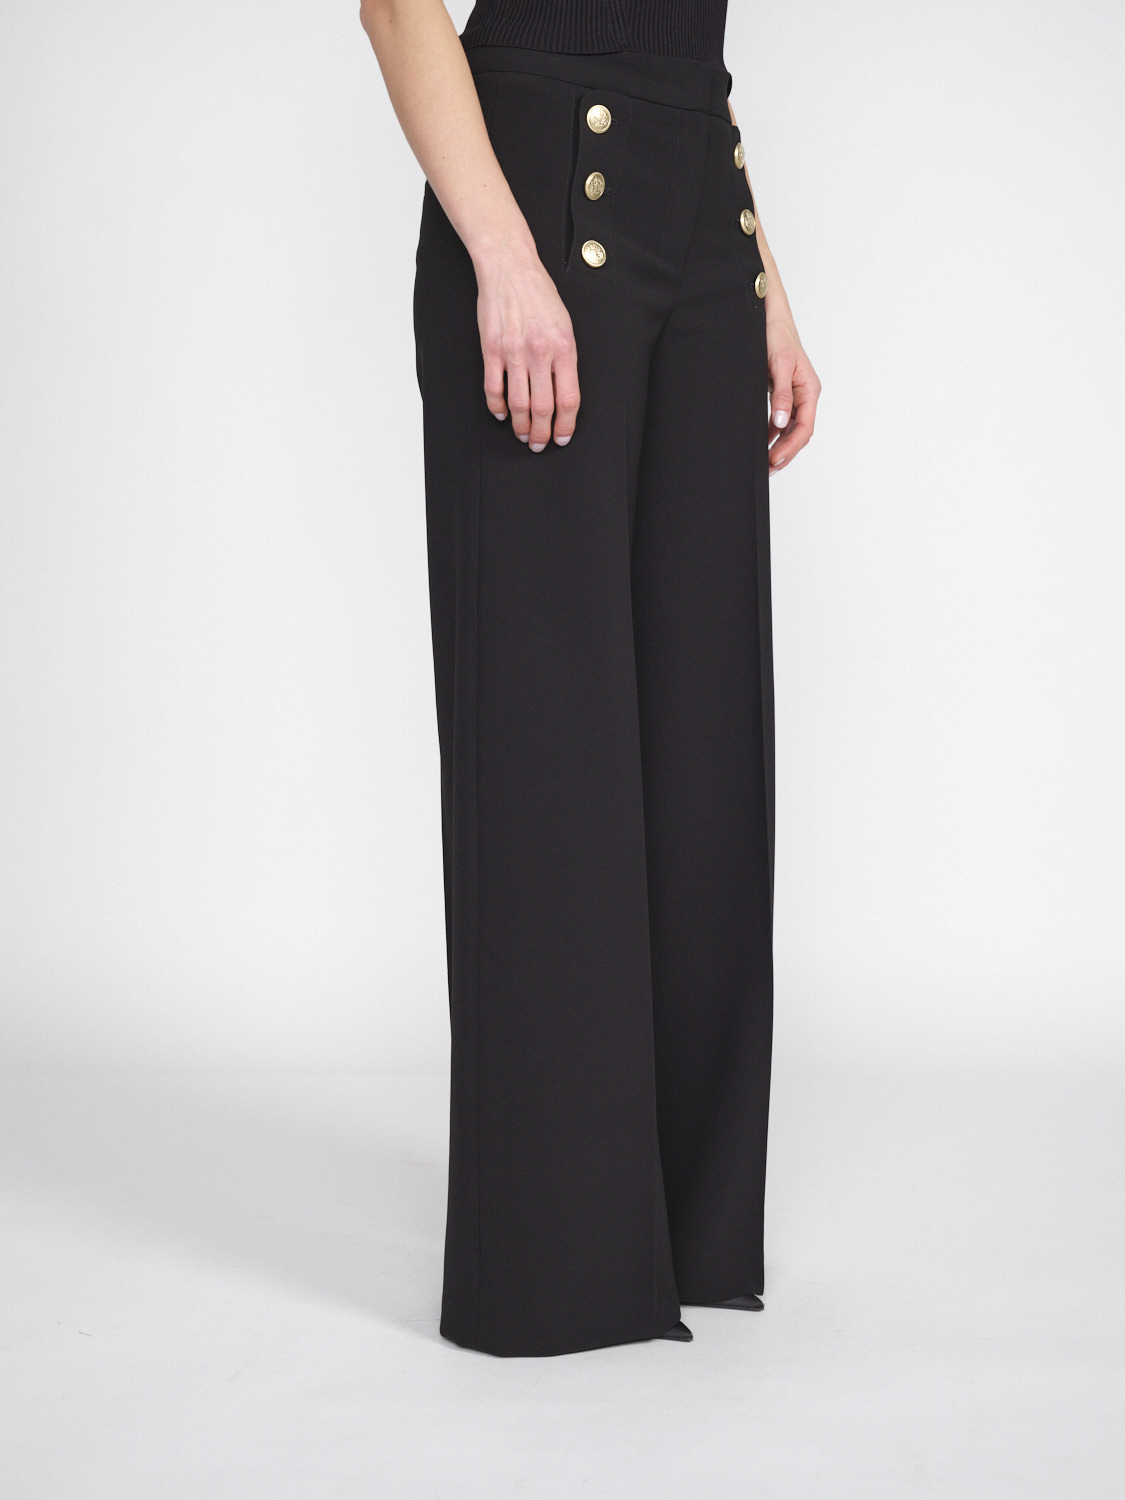 Seductive Bridget – Stretchige Hose mit goldfarbenen Knopfdetails   negro 36